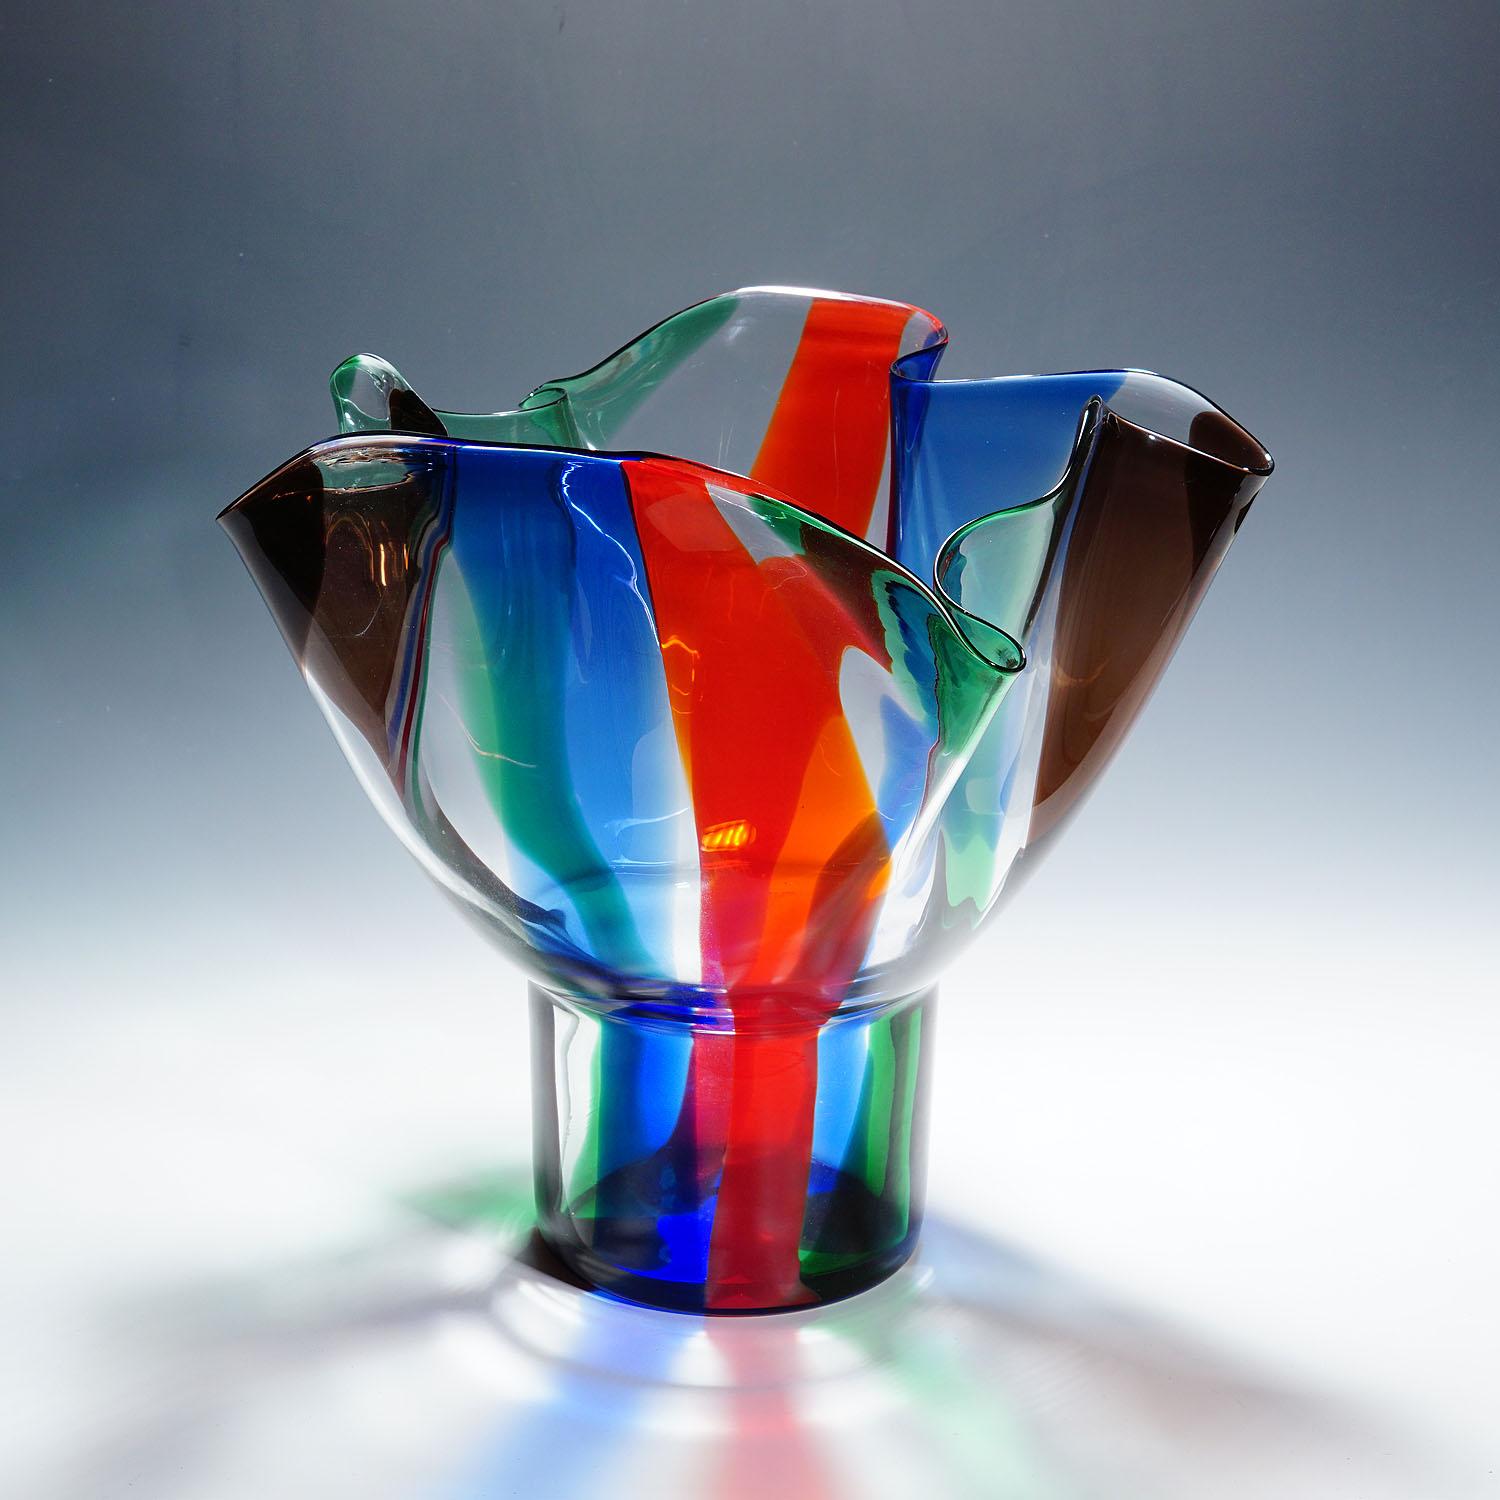 Große Venini-Vase „Kukinto“, entworfen von Timo Sarpaneva im Jahr 1991

Eine monumentale Vase aus der Kukinto-Serie. 1991 von Timo Sarpaneva entworfen und 1992 von Venini, Murano, hergestellt. Ritzsignatur 